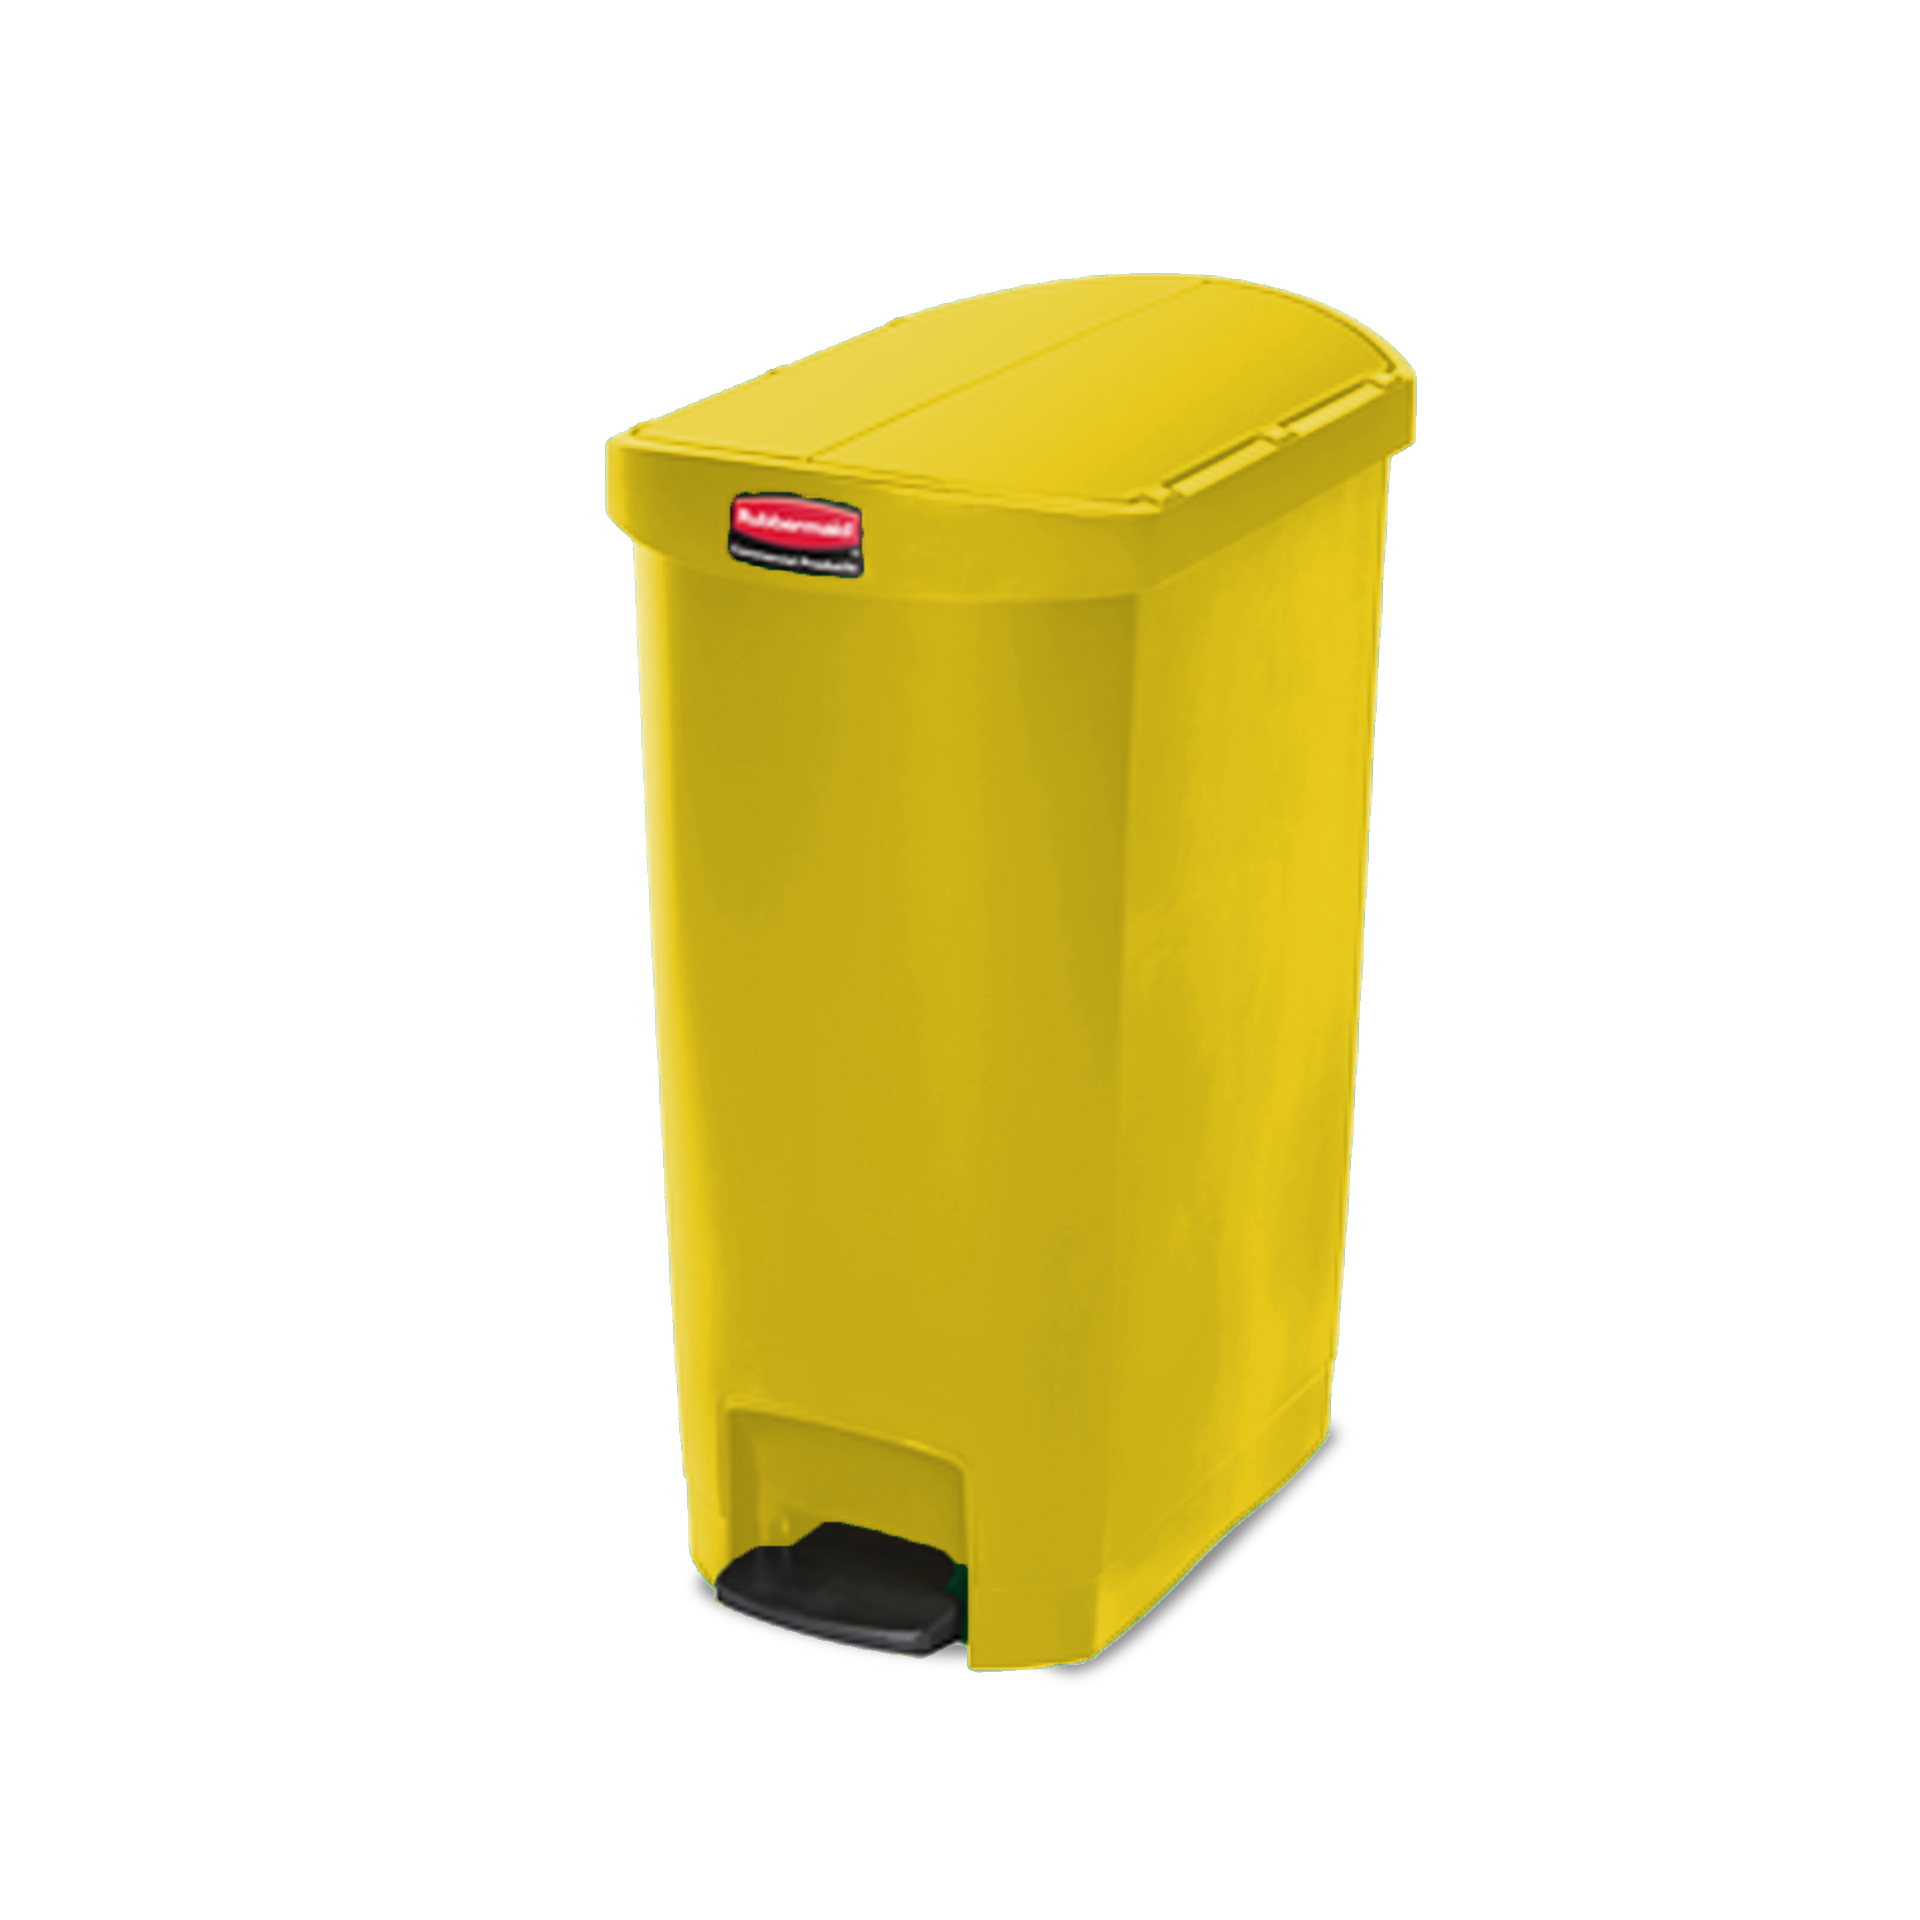 ถังขยะแบบเท้าเหยียบ ฝาถังเปิด 2 ด้าน Slim Jim® Step-On Container ขนาด 50 ลิตร สีเหลือง